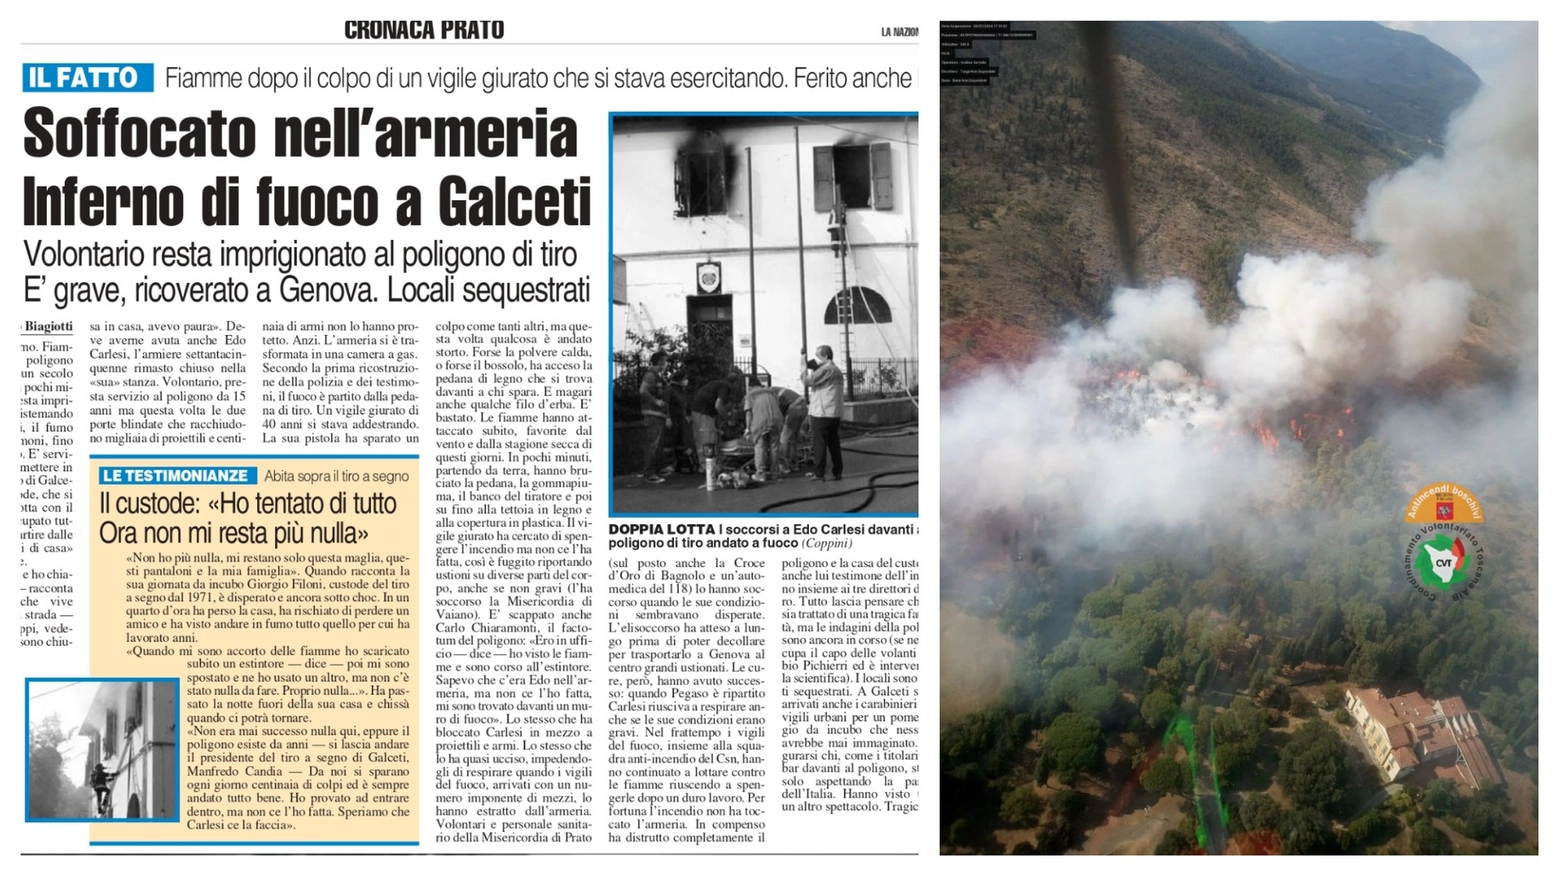 Il 4 luglio 2006 l’armiere Edo Carlesi, 75 anni, rimase bloccato dalle fiamme al tiro a segno di Galceti: morì dopo più di un mese all’ospedale “Gaslini” di Genova